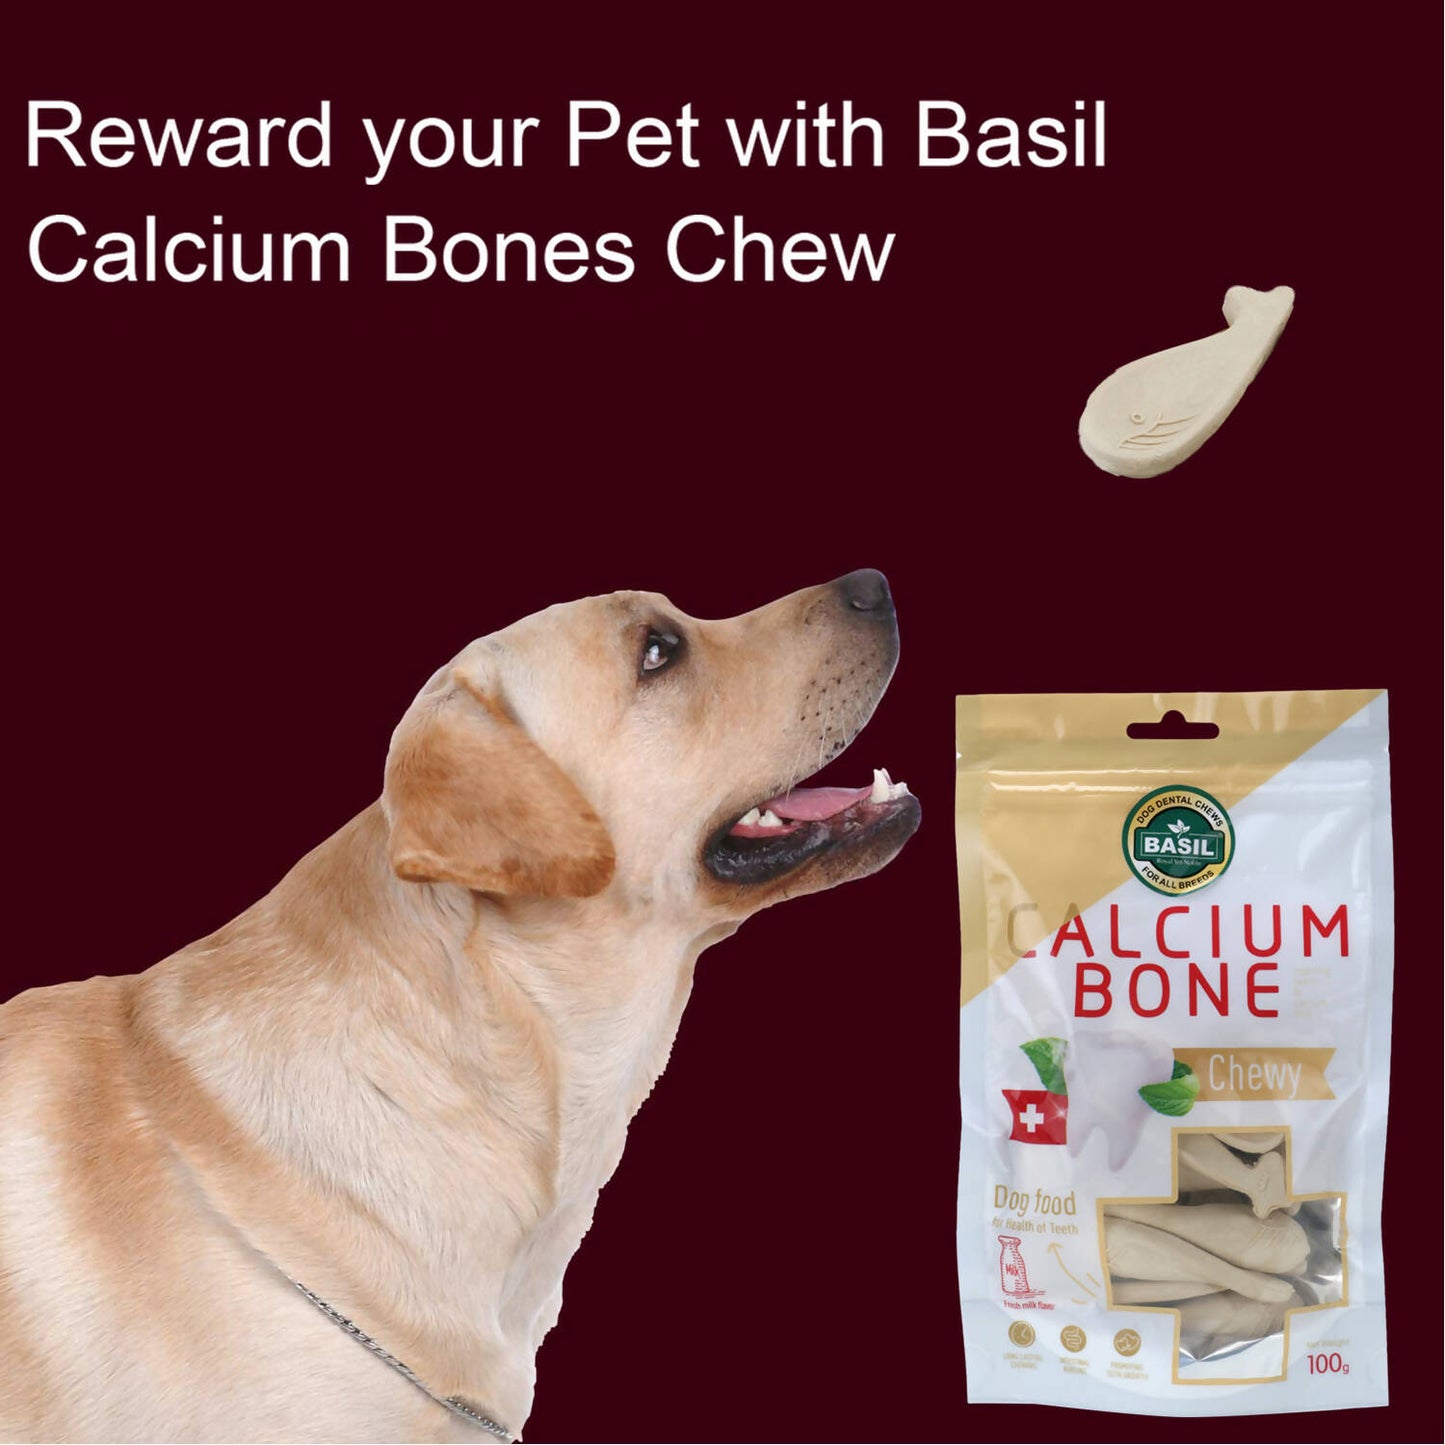 Basil - Calcium Chew Bones Treat For Dogs